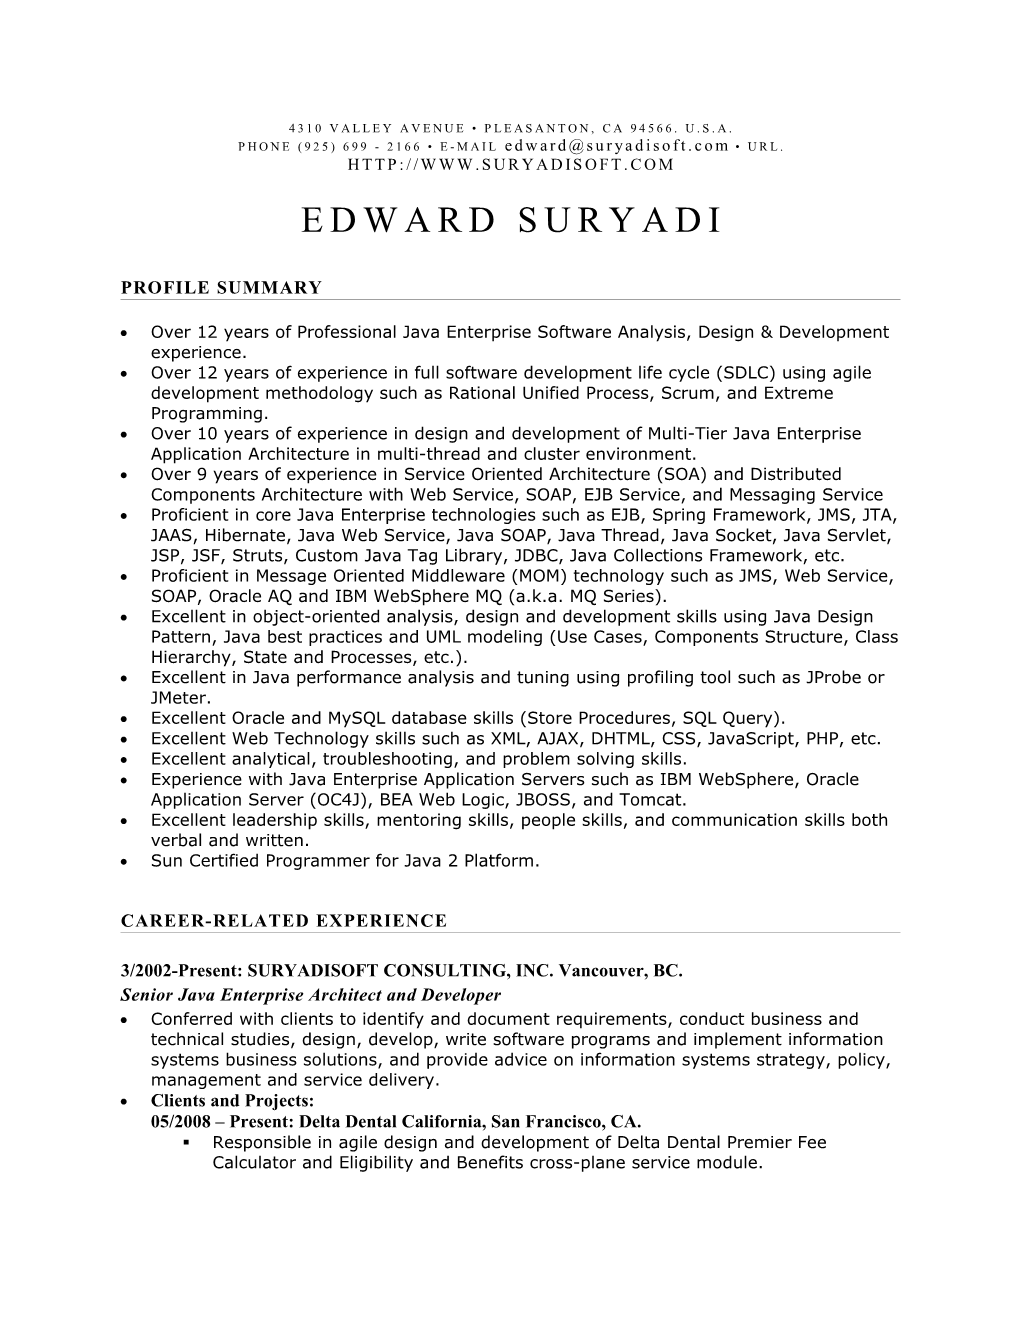 Edward Suryadi